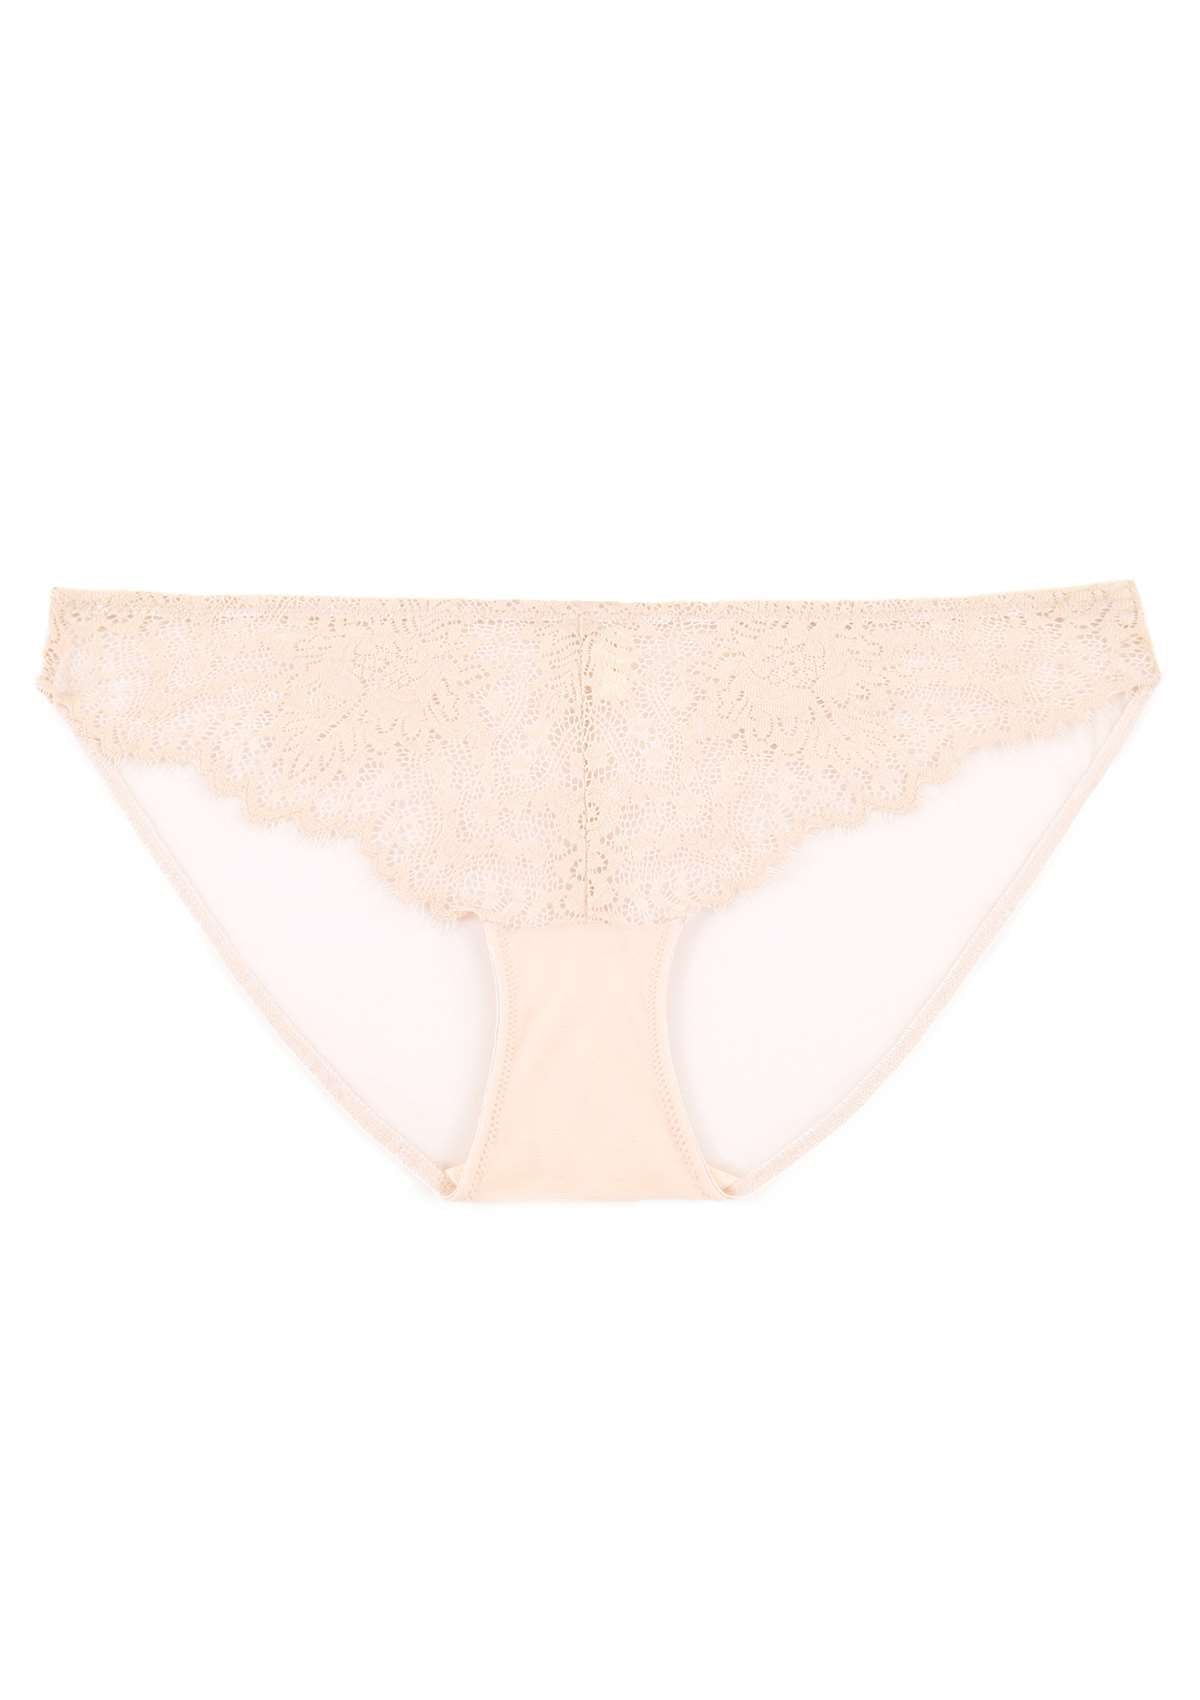 HSIA Sunflower Exquisite Pink Lace Bikini Underwear - XL / High-Rise Brief / Pink